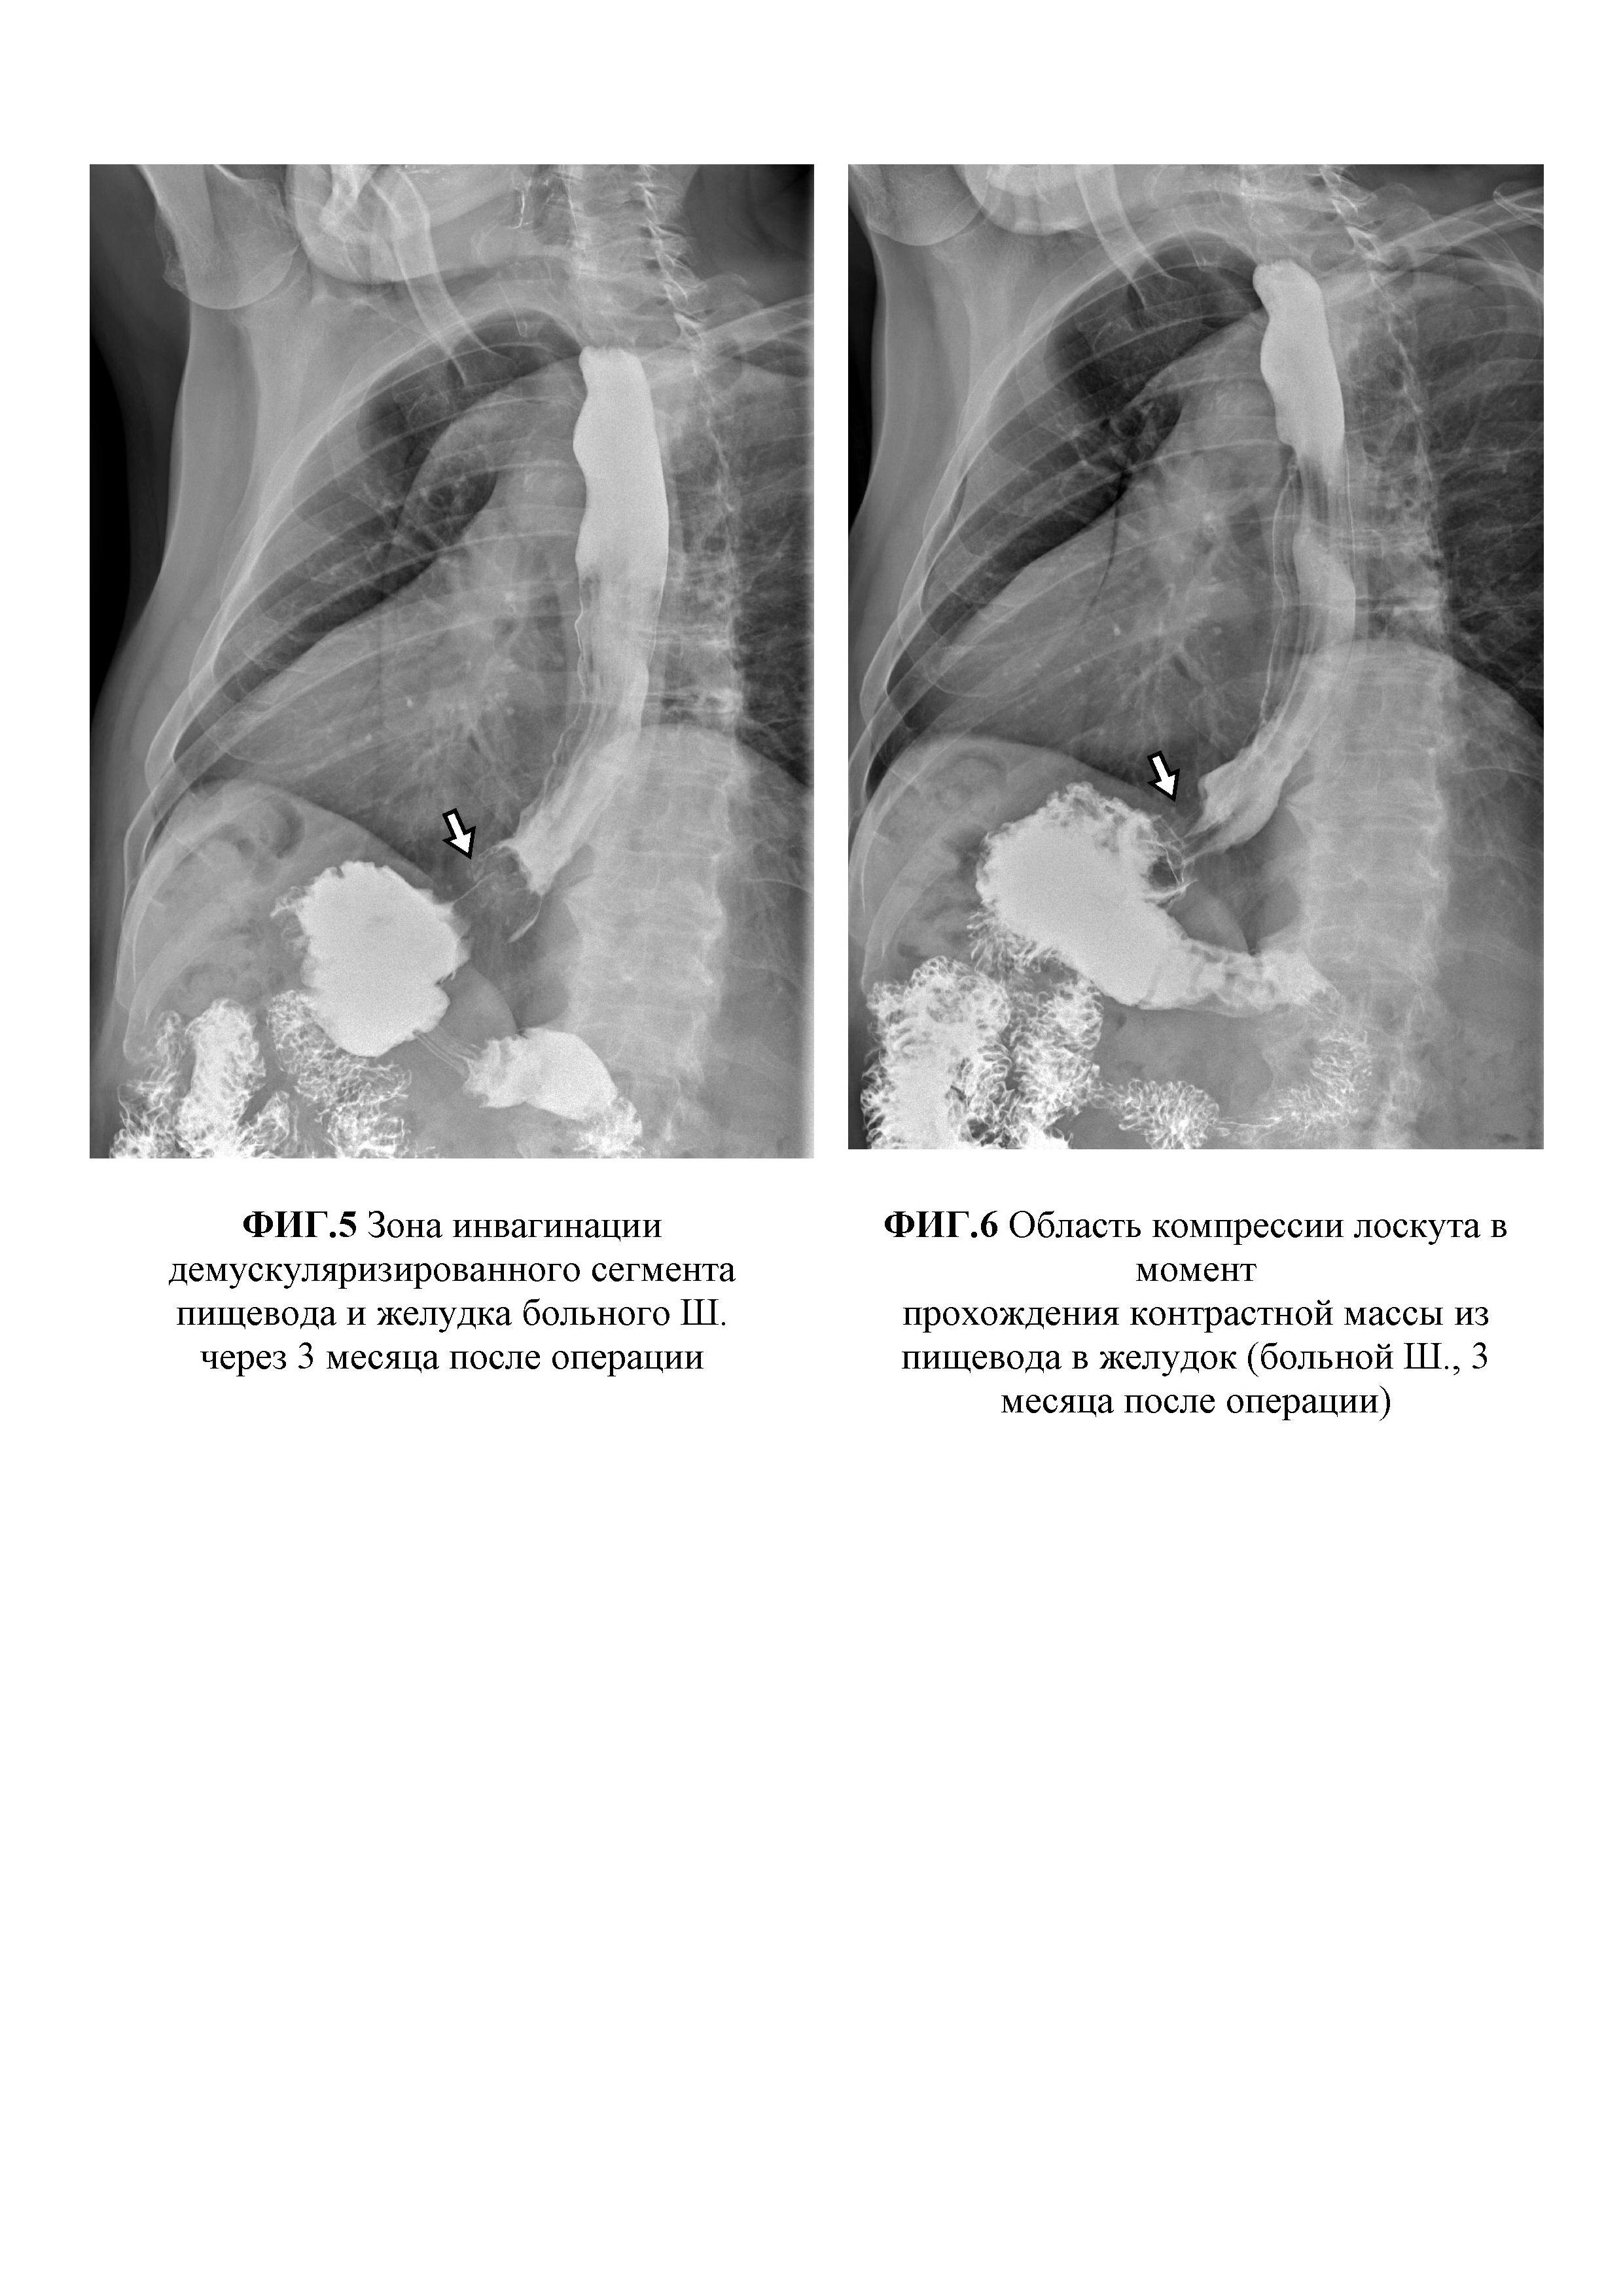 Способ хирургического лечения ахалазии кардии III-IV стадии, осложненной S-, L-образной деформацией пищевода